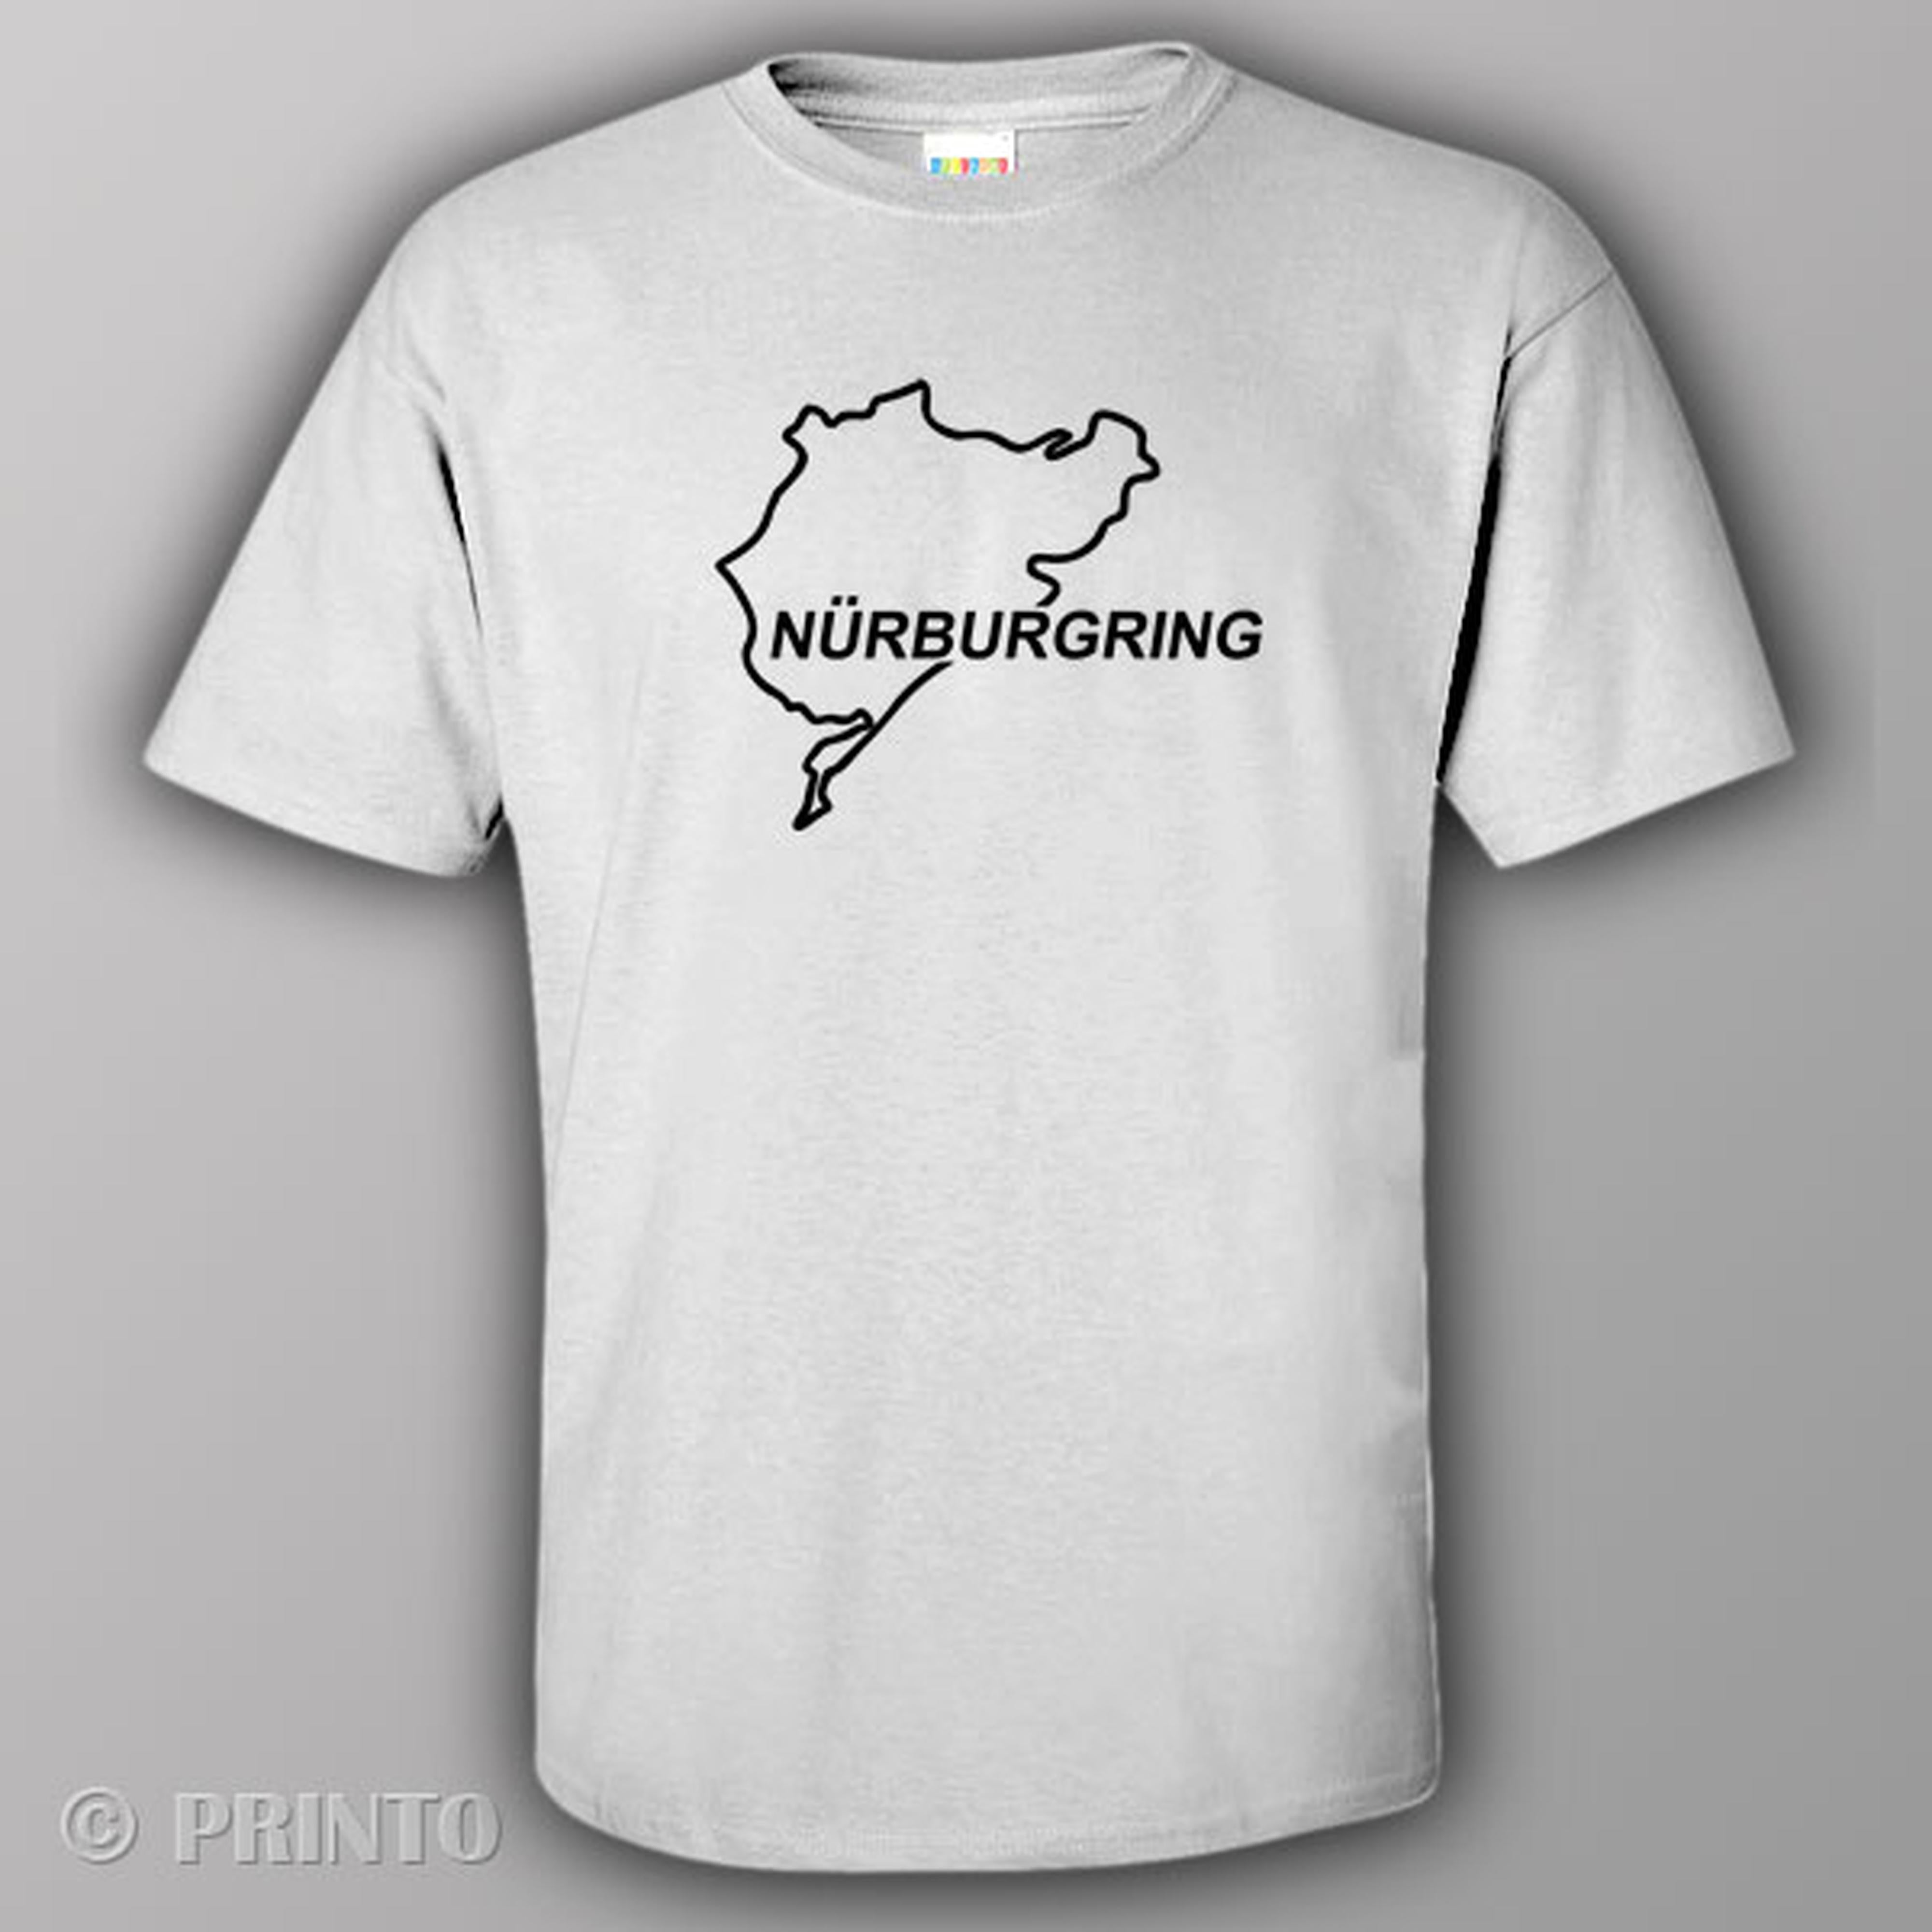 Nurburgring - T-shirt